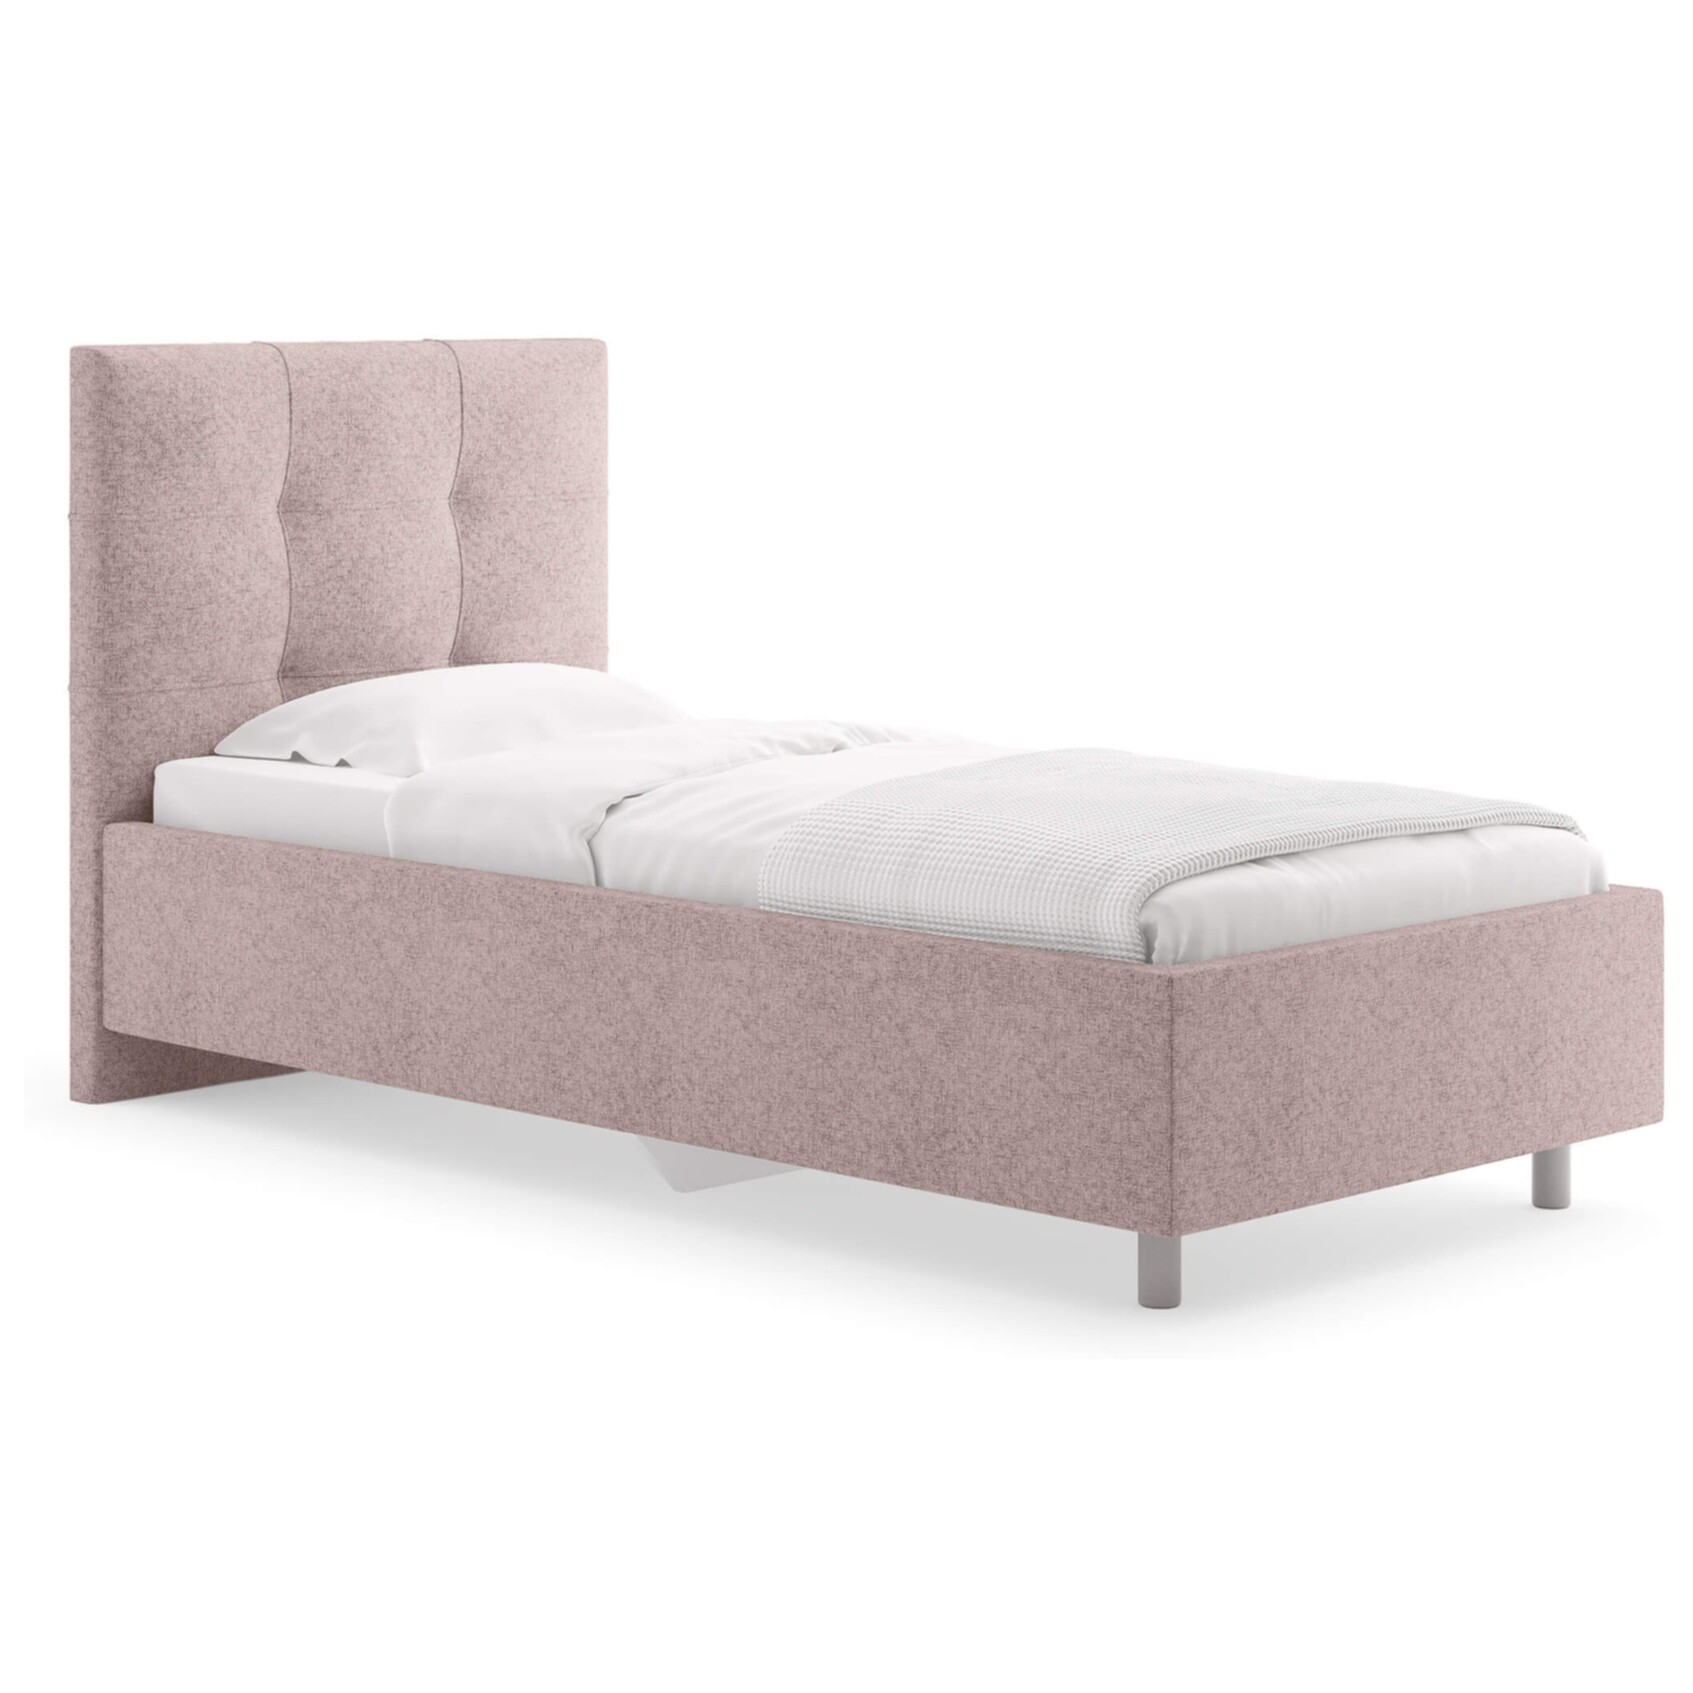 Кровать с мягким изголовьем односпальная 80х200 см кашемир розовая Caprice